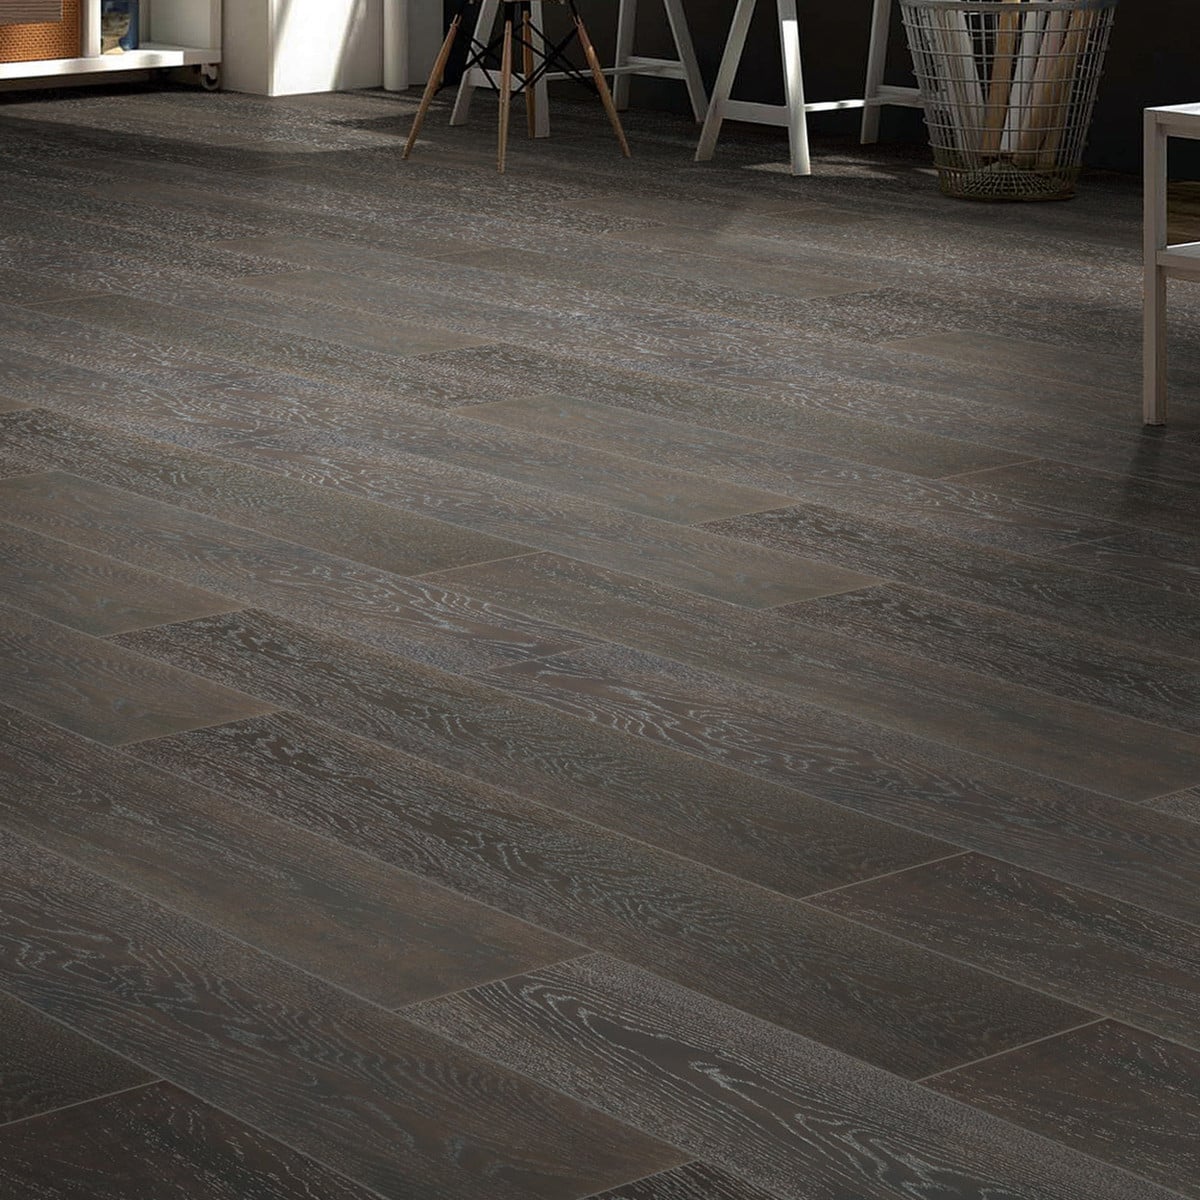 Hardwood Floors - Sustainable Elegance